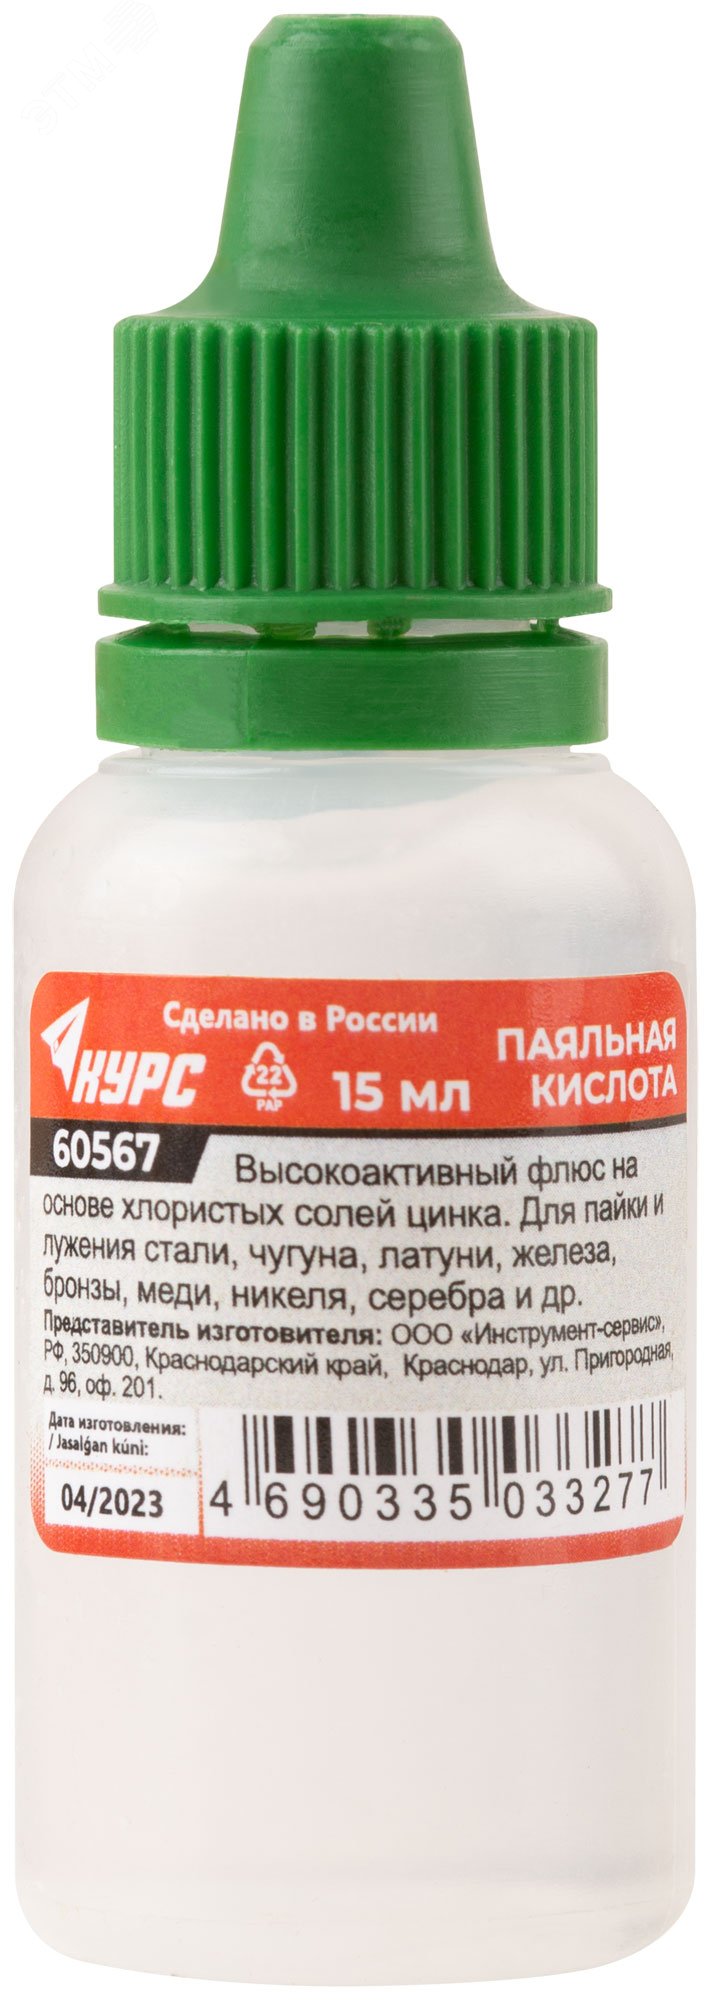 Паяльная кислота (высокоактивный флюс на основе хлористых солей цинка) 15 мл 60567 РОС - превью